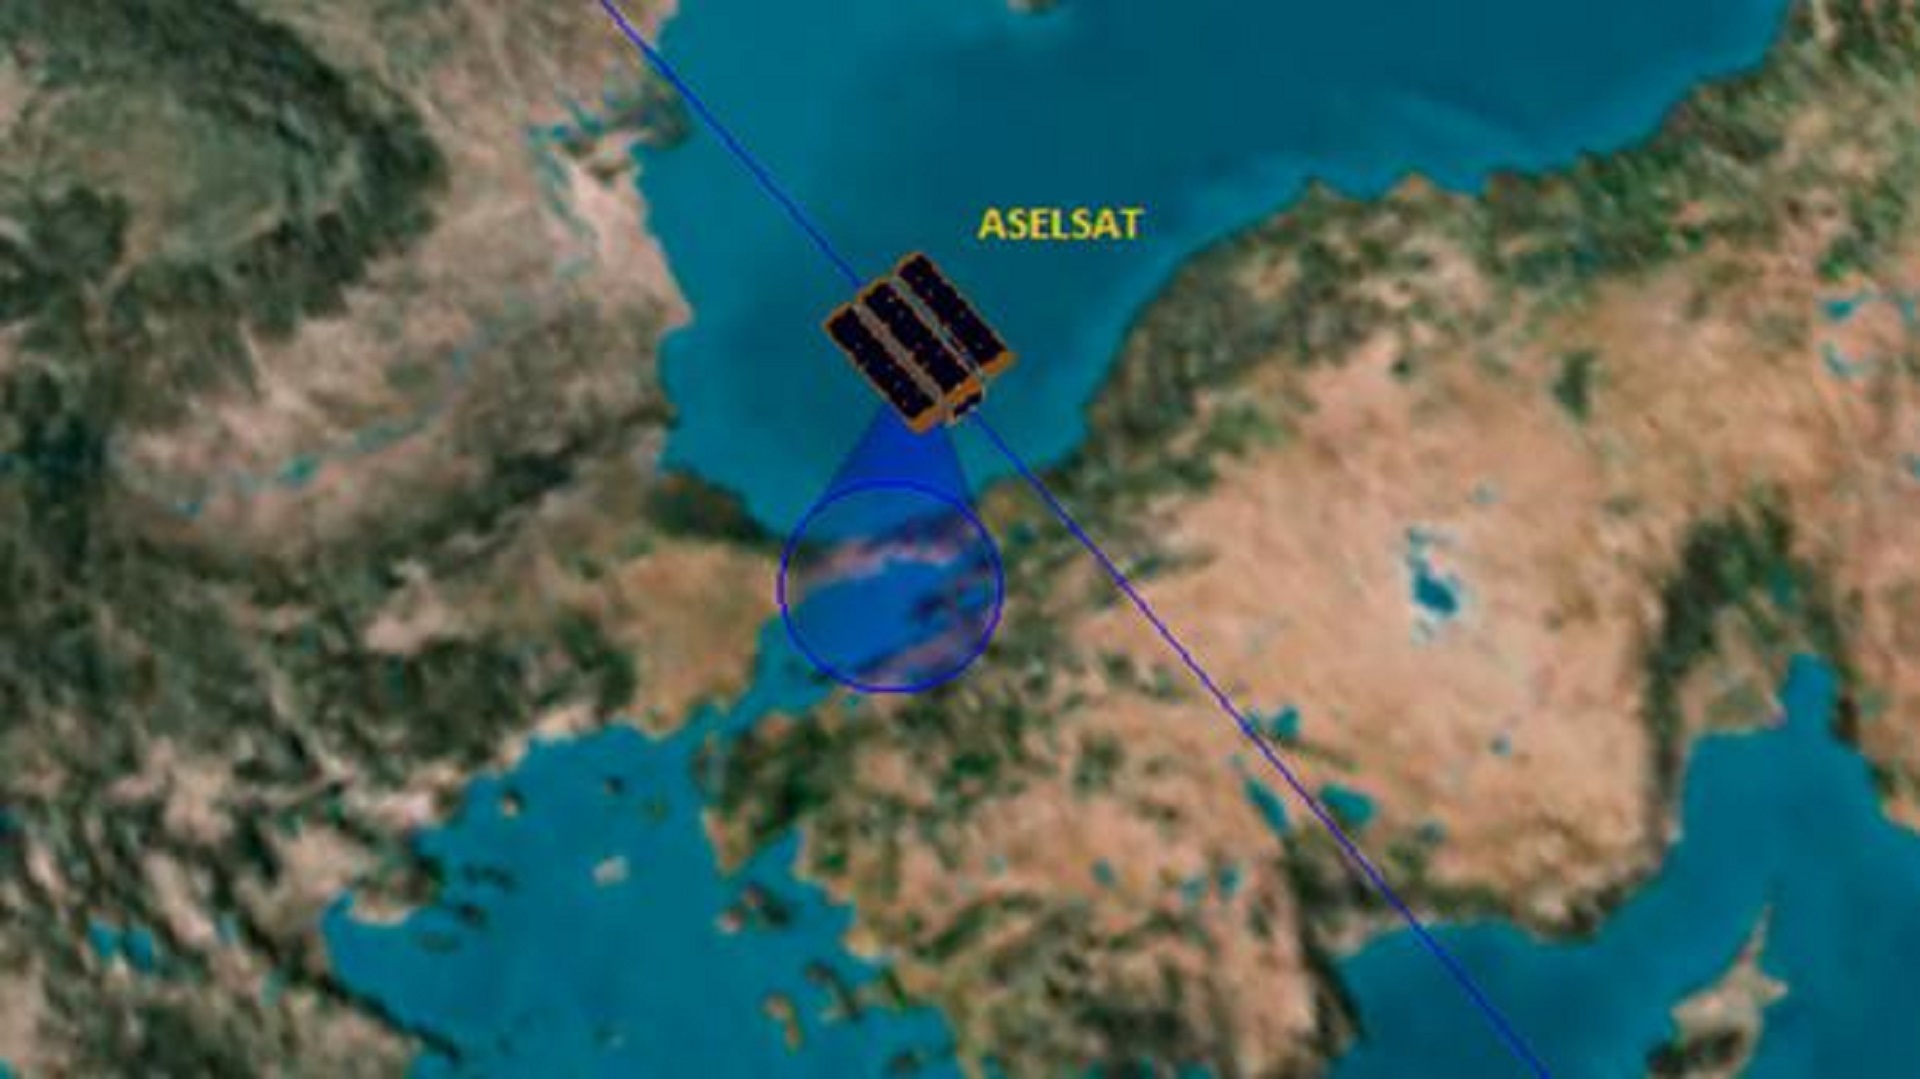 امروز ماهواره آسلسات 3 یو تورکیه، به فضا پرتاب شد